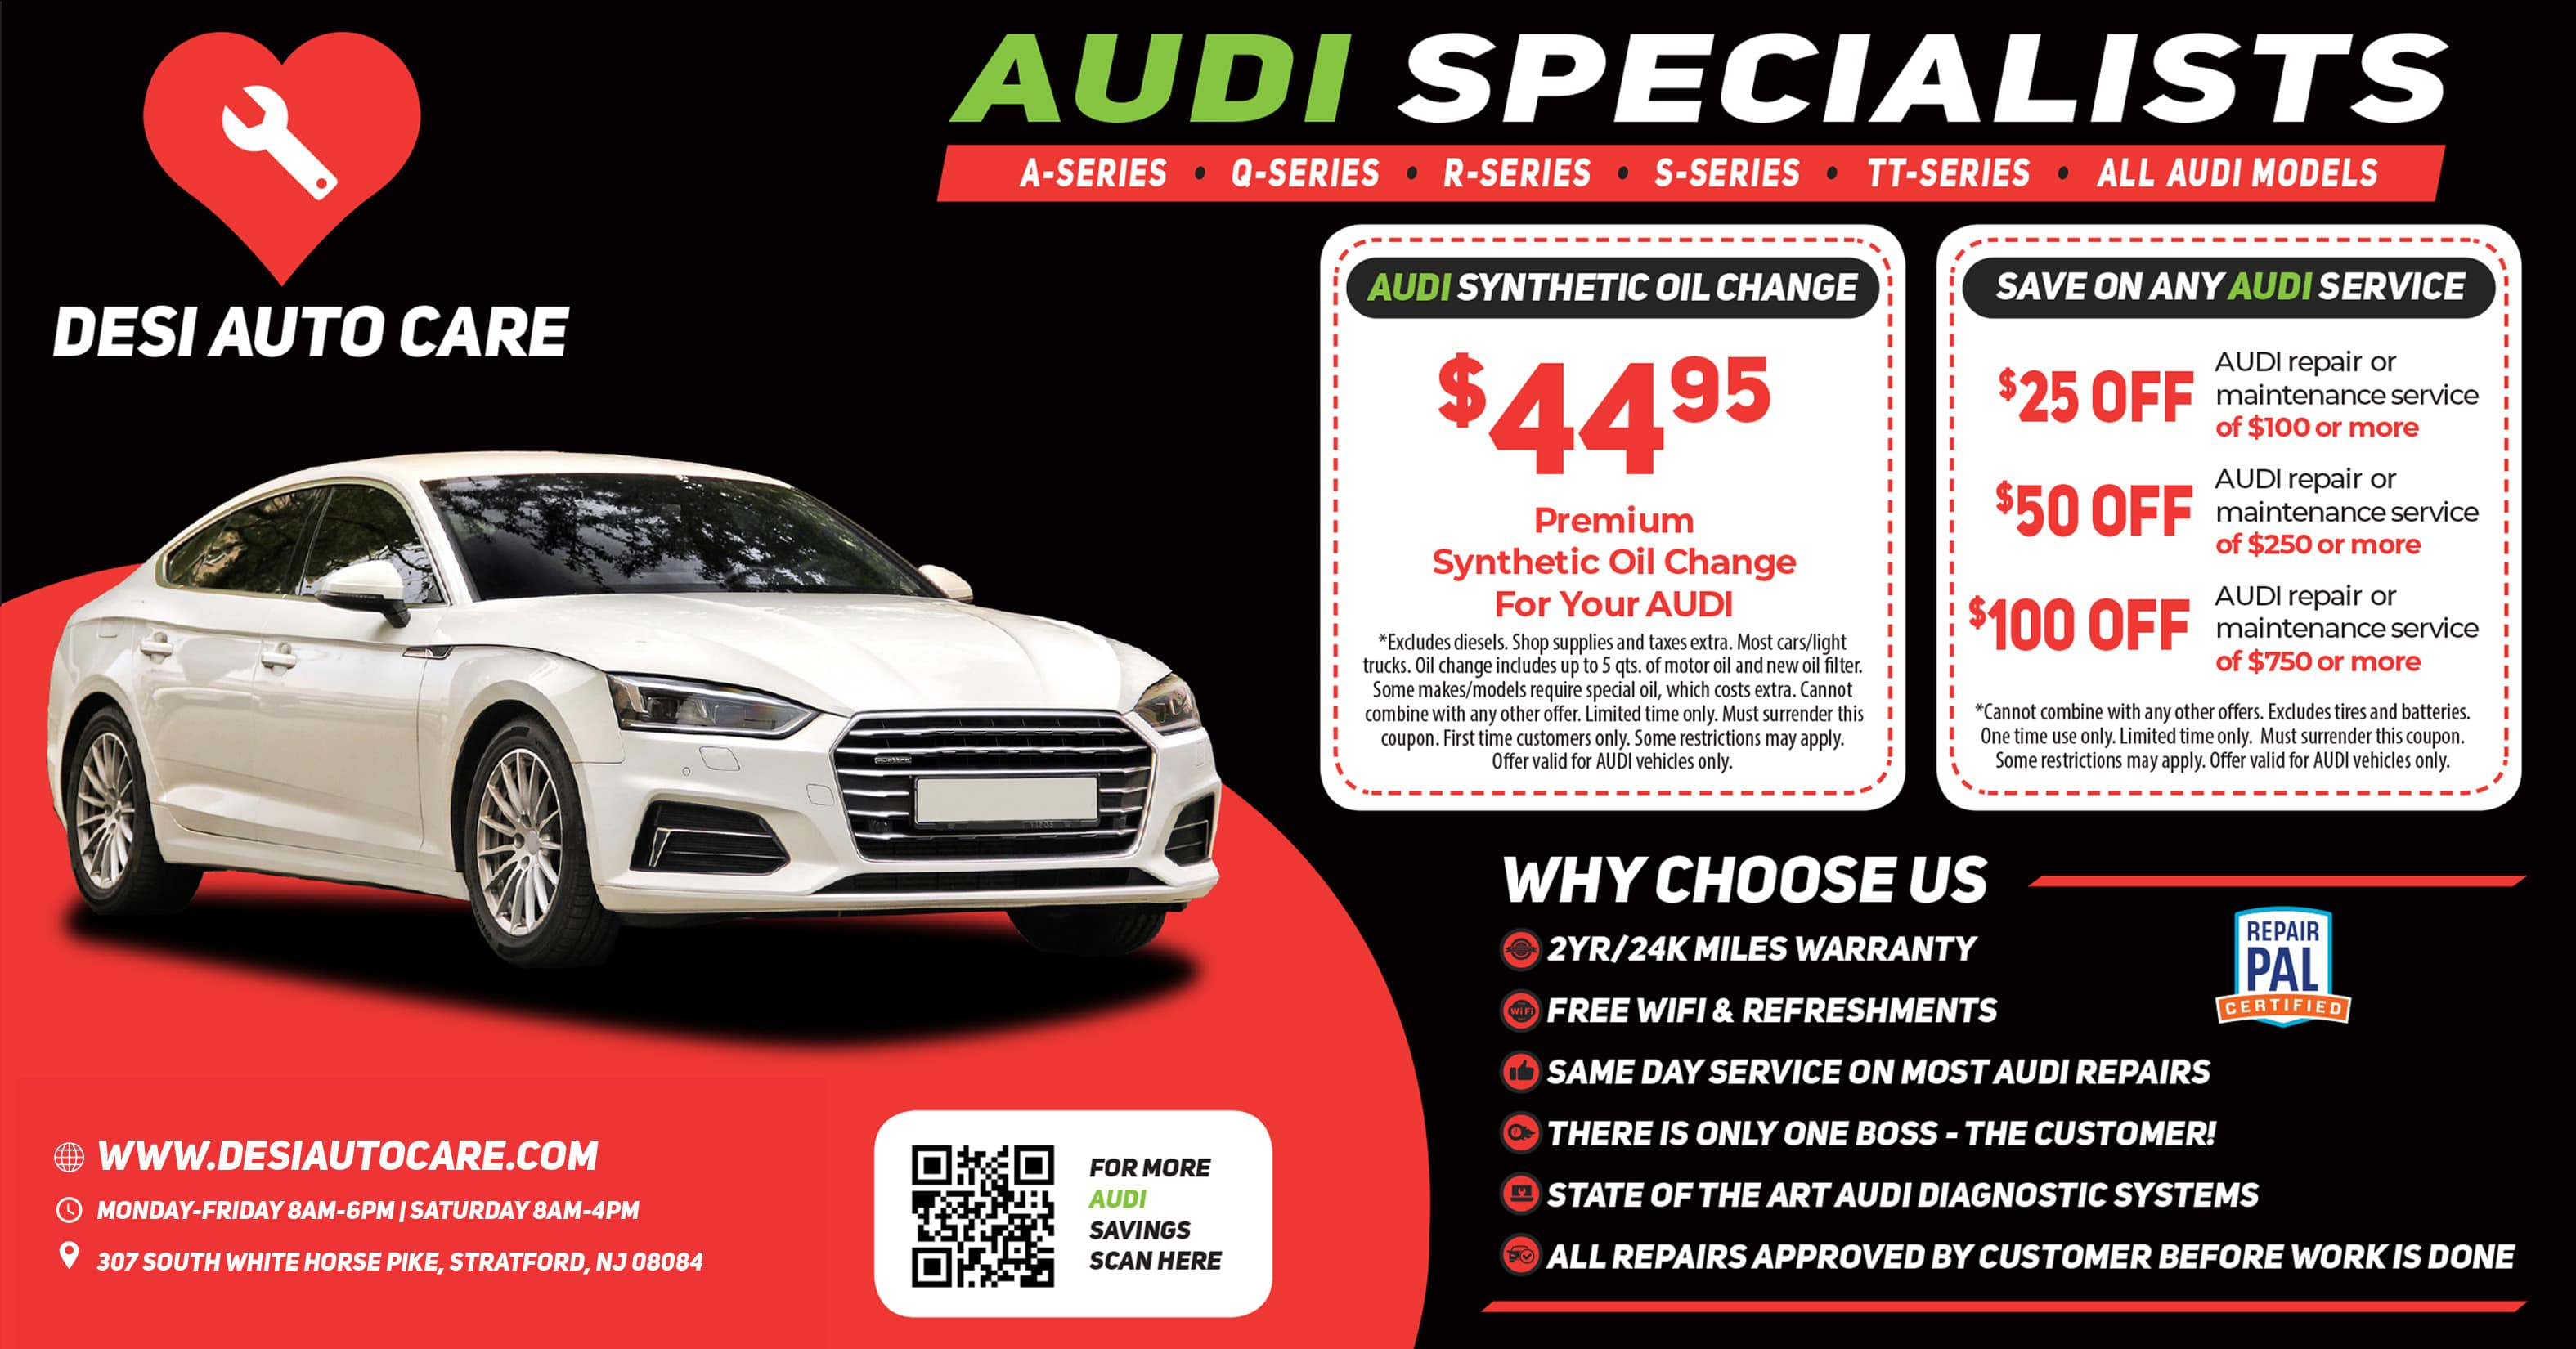 Audi Services 2 | Desi Auto Care